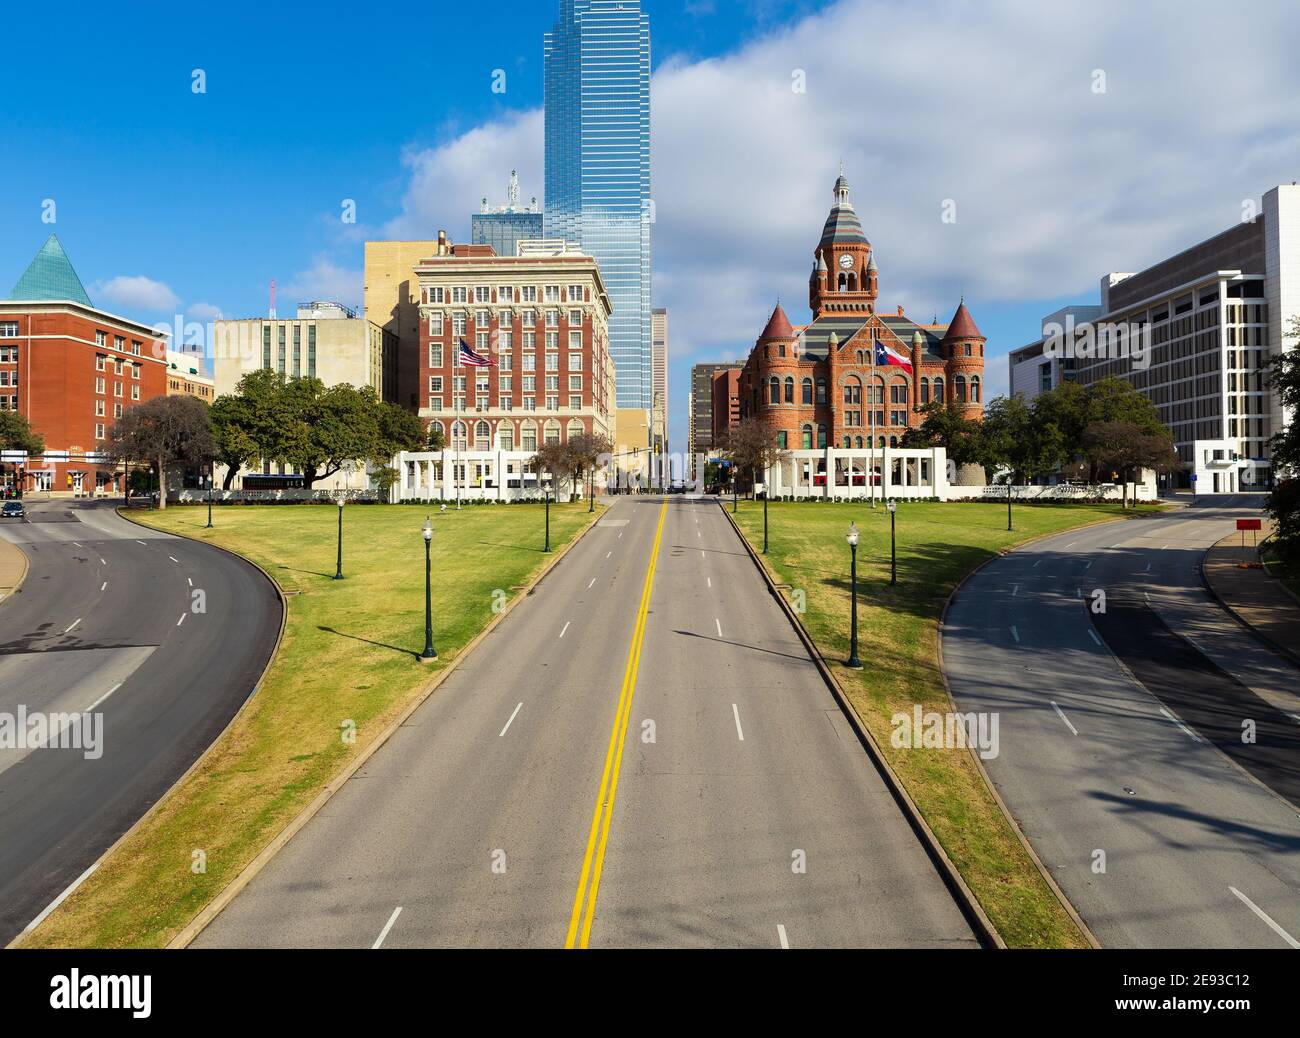 Dealey Plaza, parc municipal et site historique national dans le centre-ville de Dallas, Texas. Lieu de l'assassinat du Président Kennedy sur Elm Street à gauche. Banque D'Images